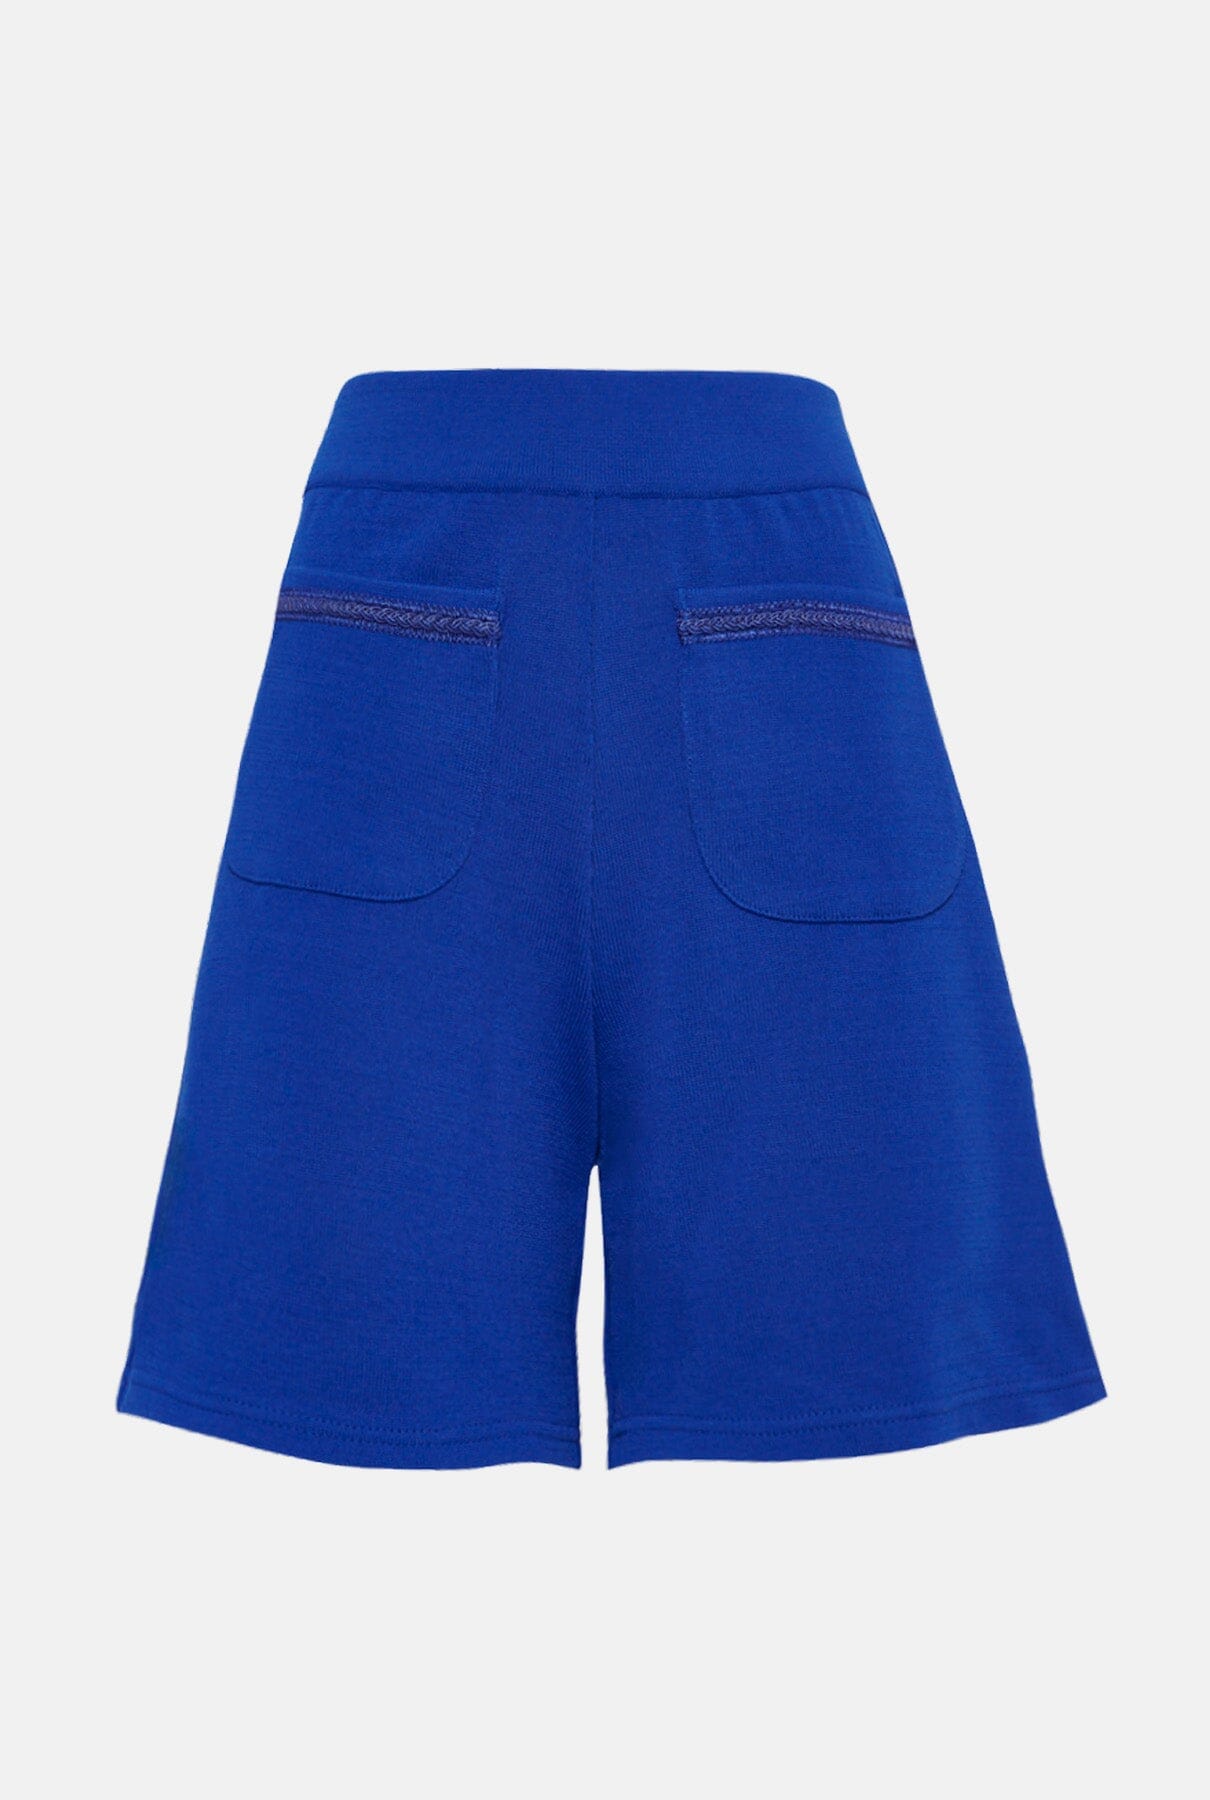 Montse Short - Royal blue Shorts Laia Alen 